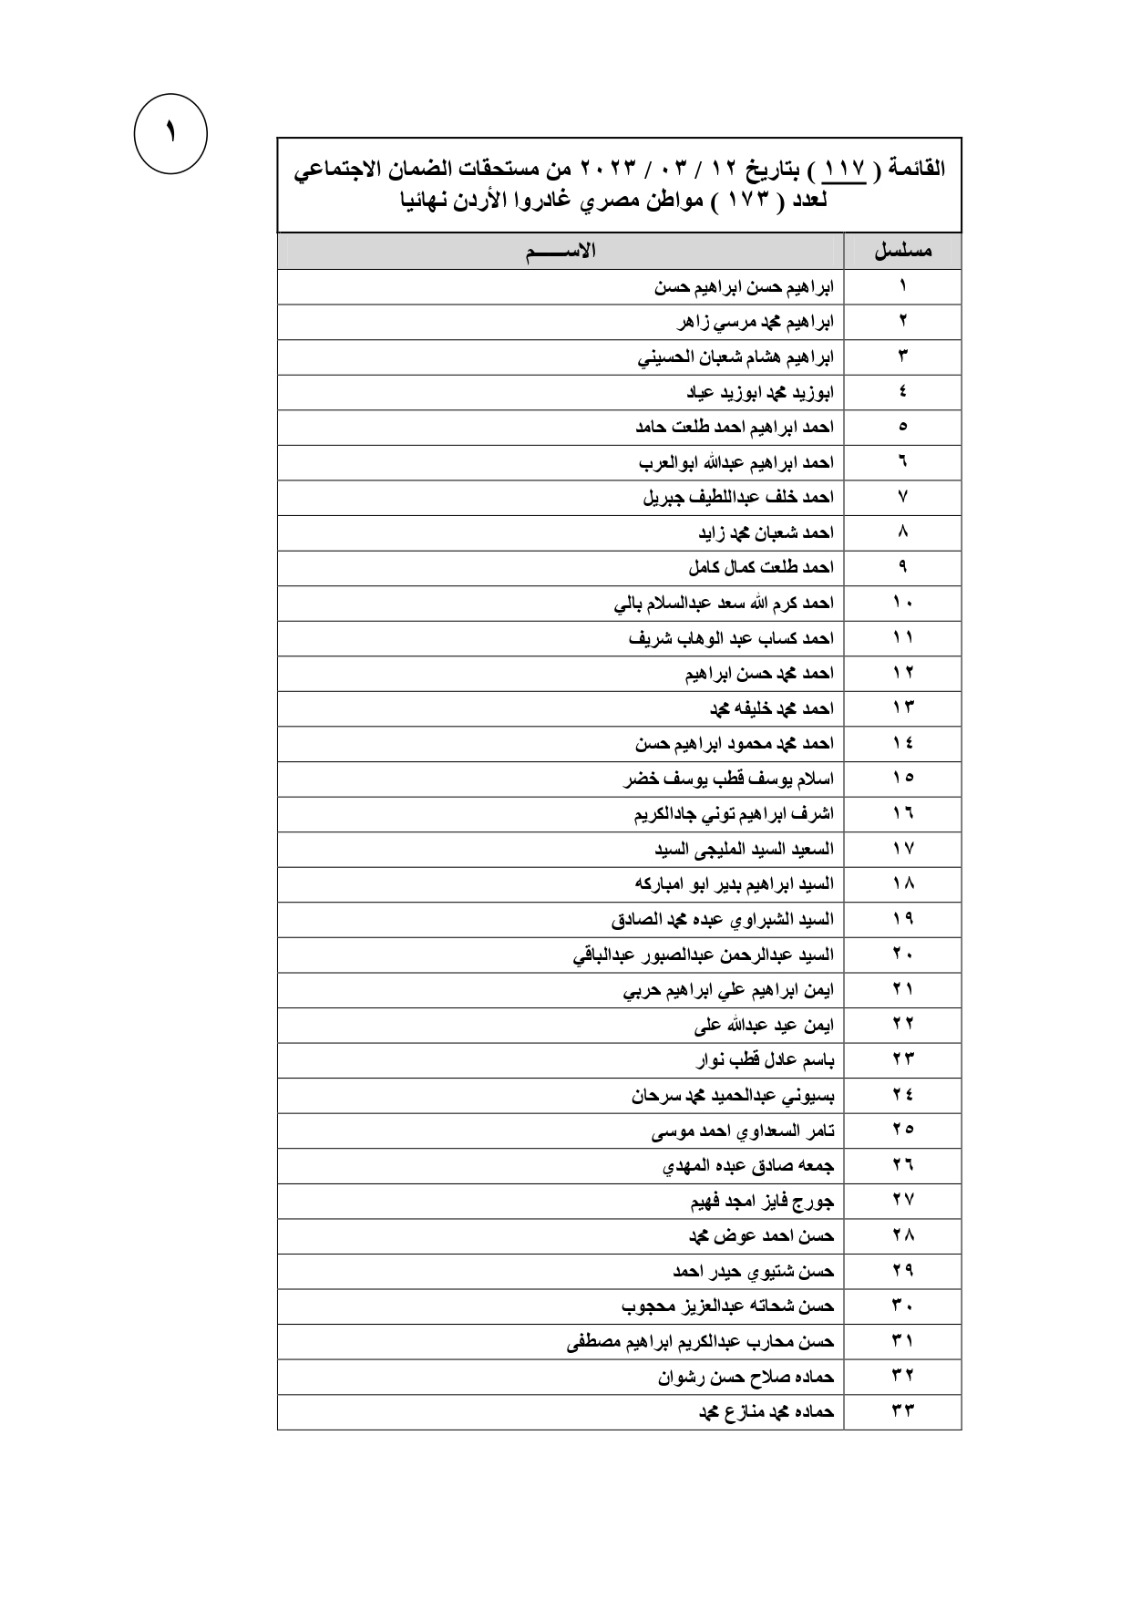   القائمة الـ117 للعمالة مصرية التي غادرت الأردن